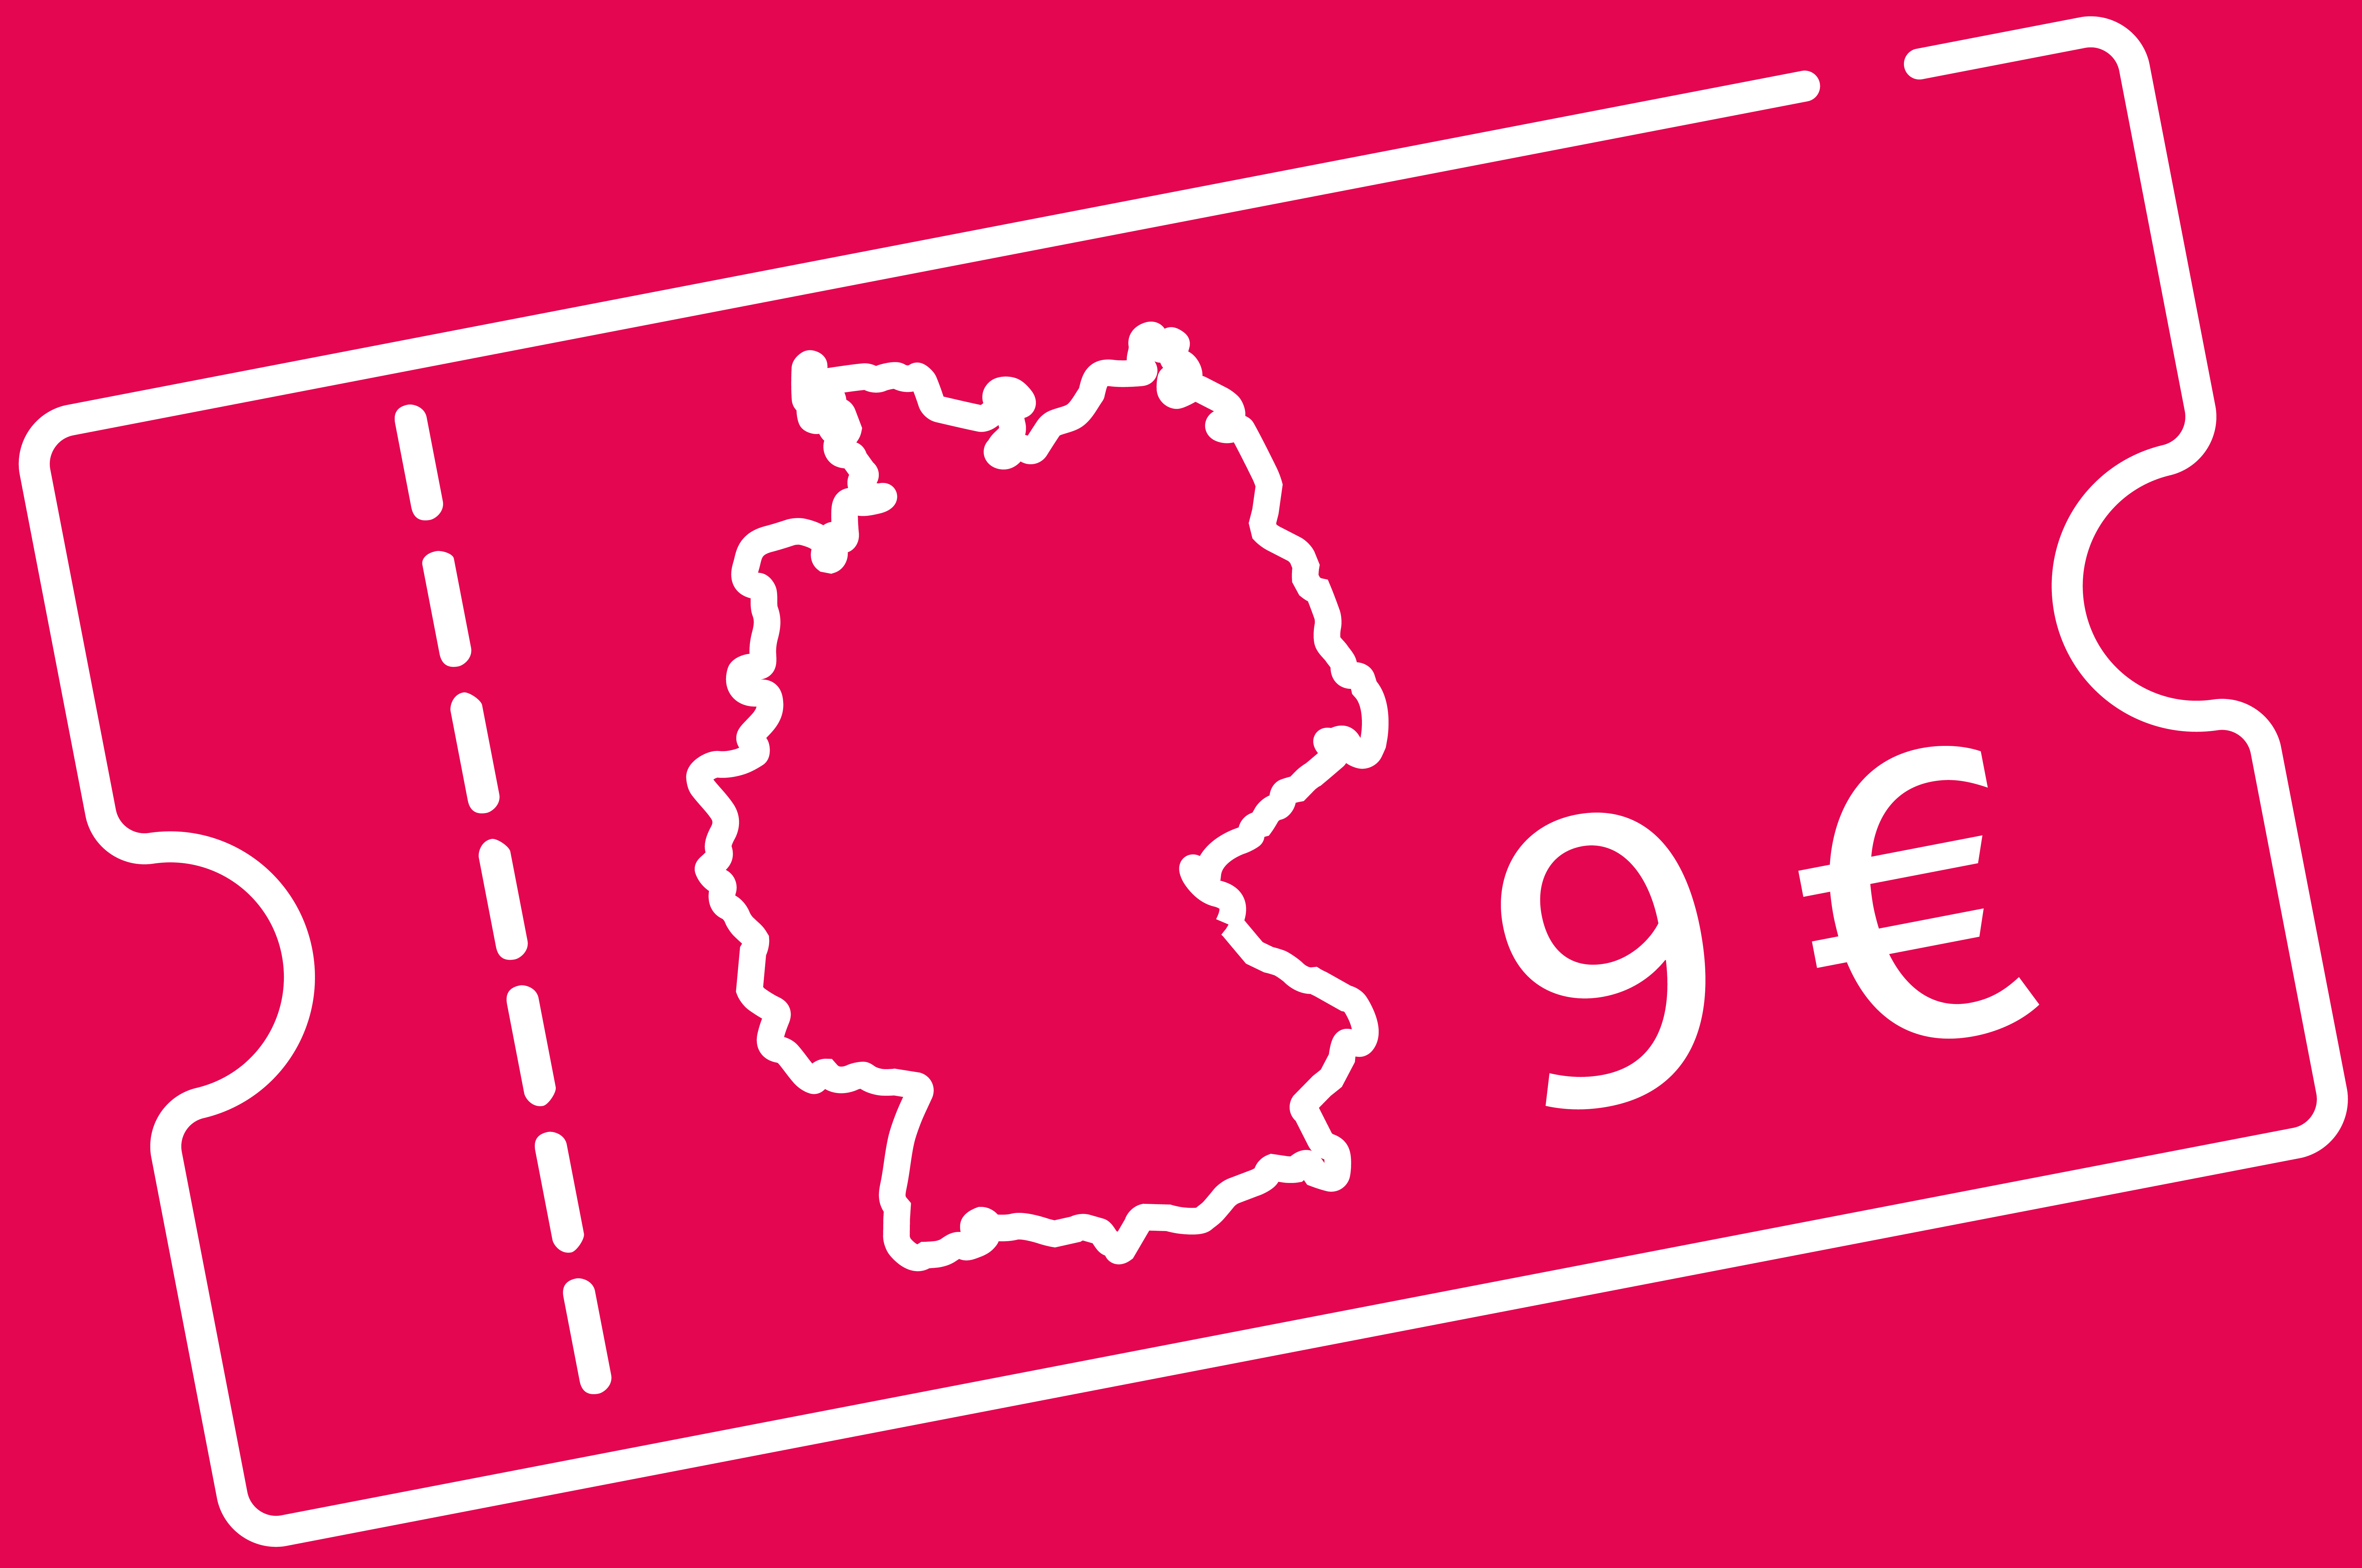 Bild mit einem Ticket, einer Deutschlandkarte und dem Preis von 9 Euro